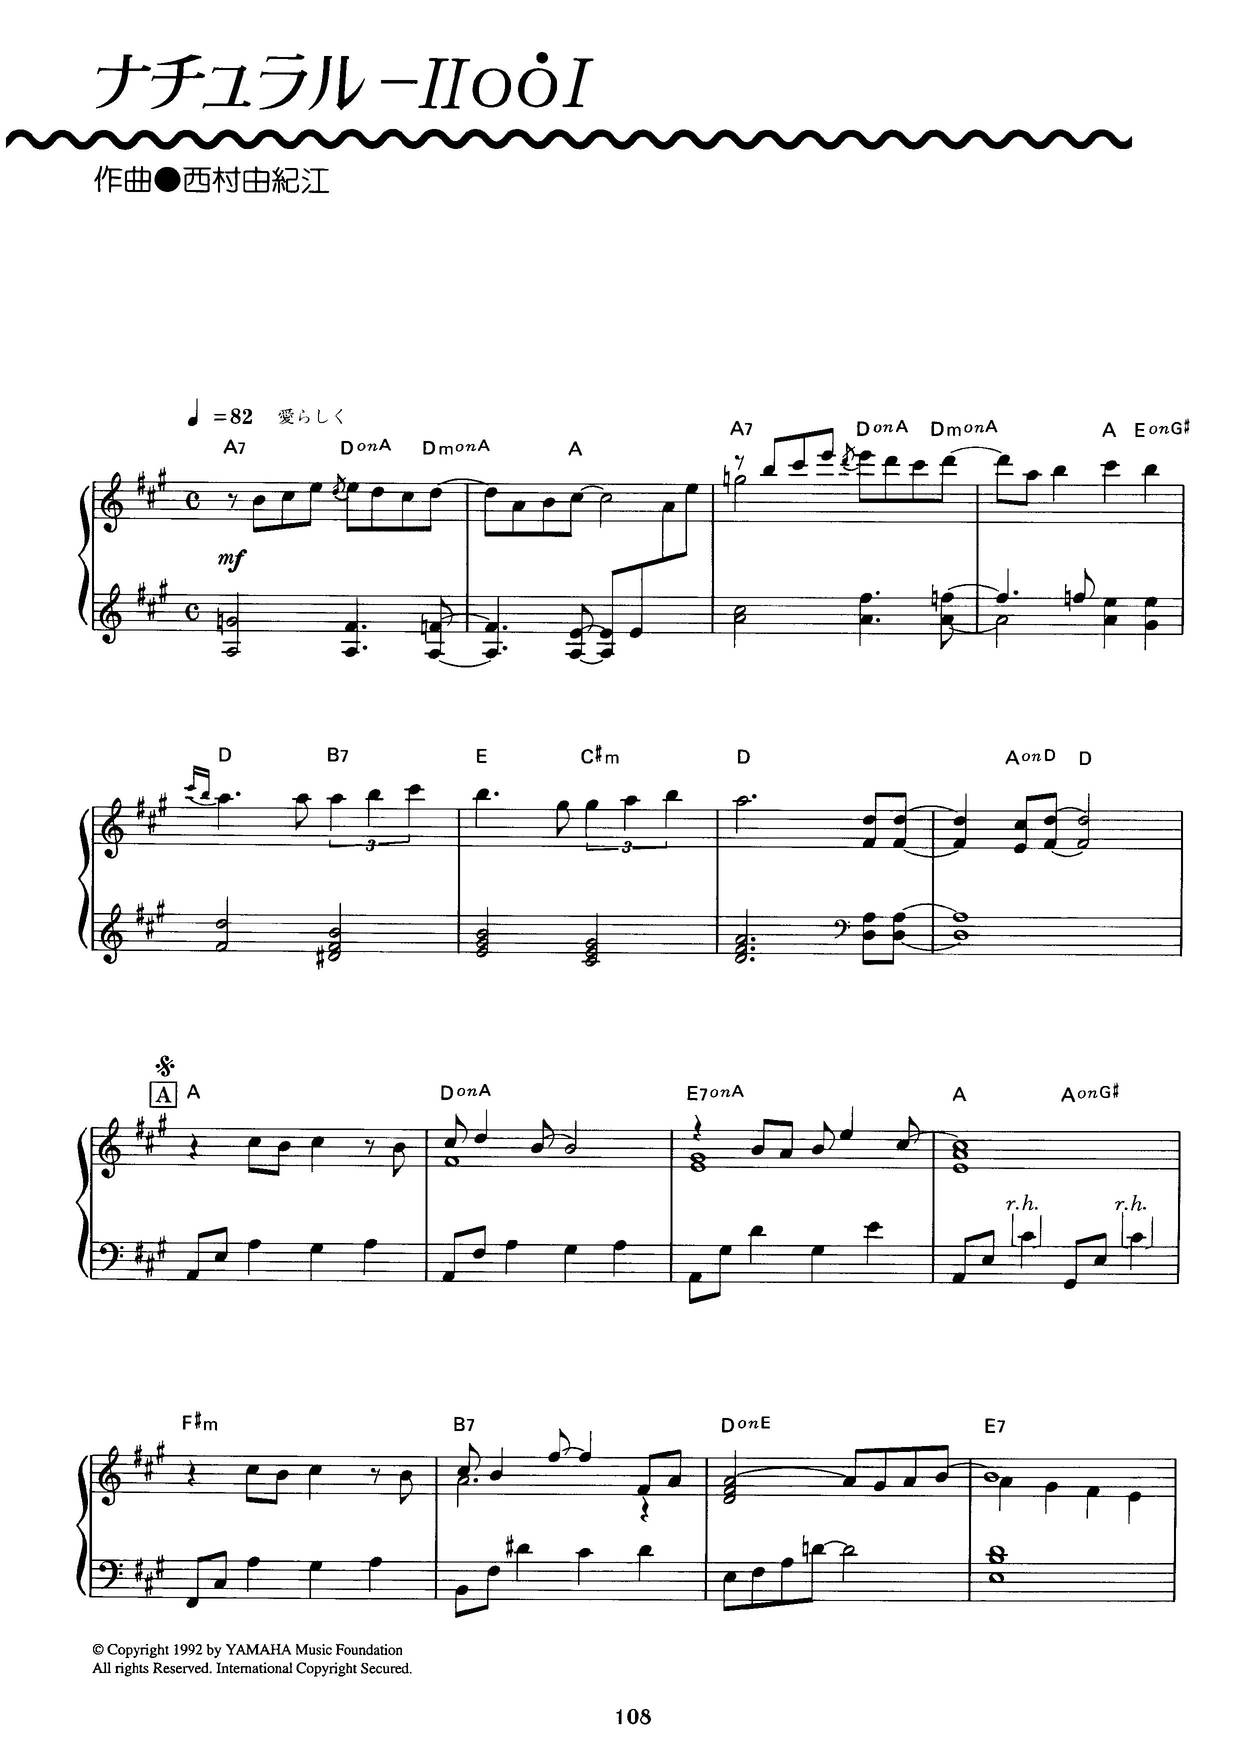 ナチュラル-IIooIピアノ譜